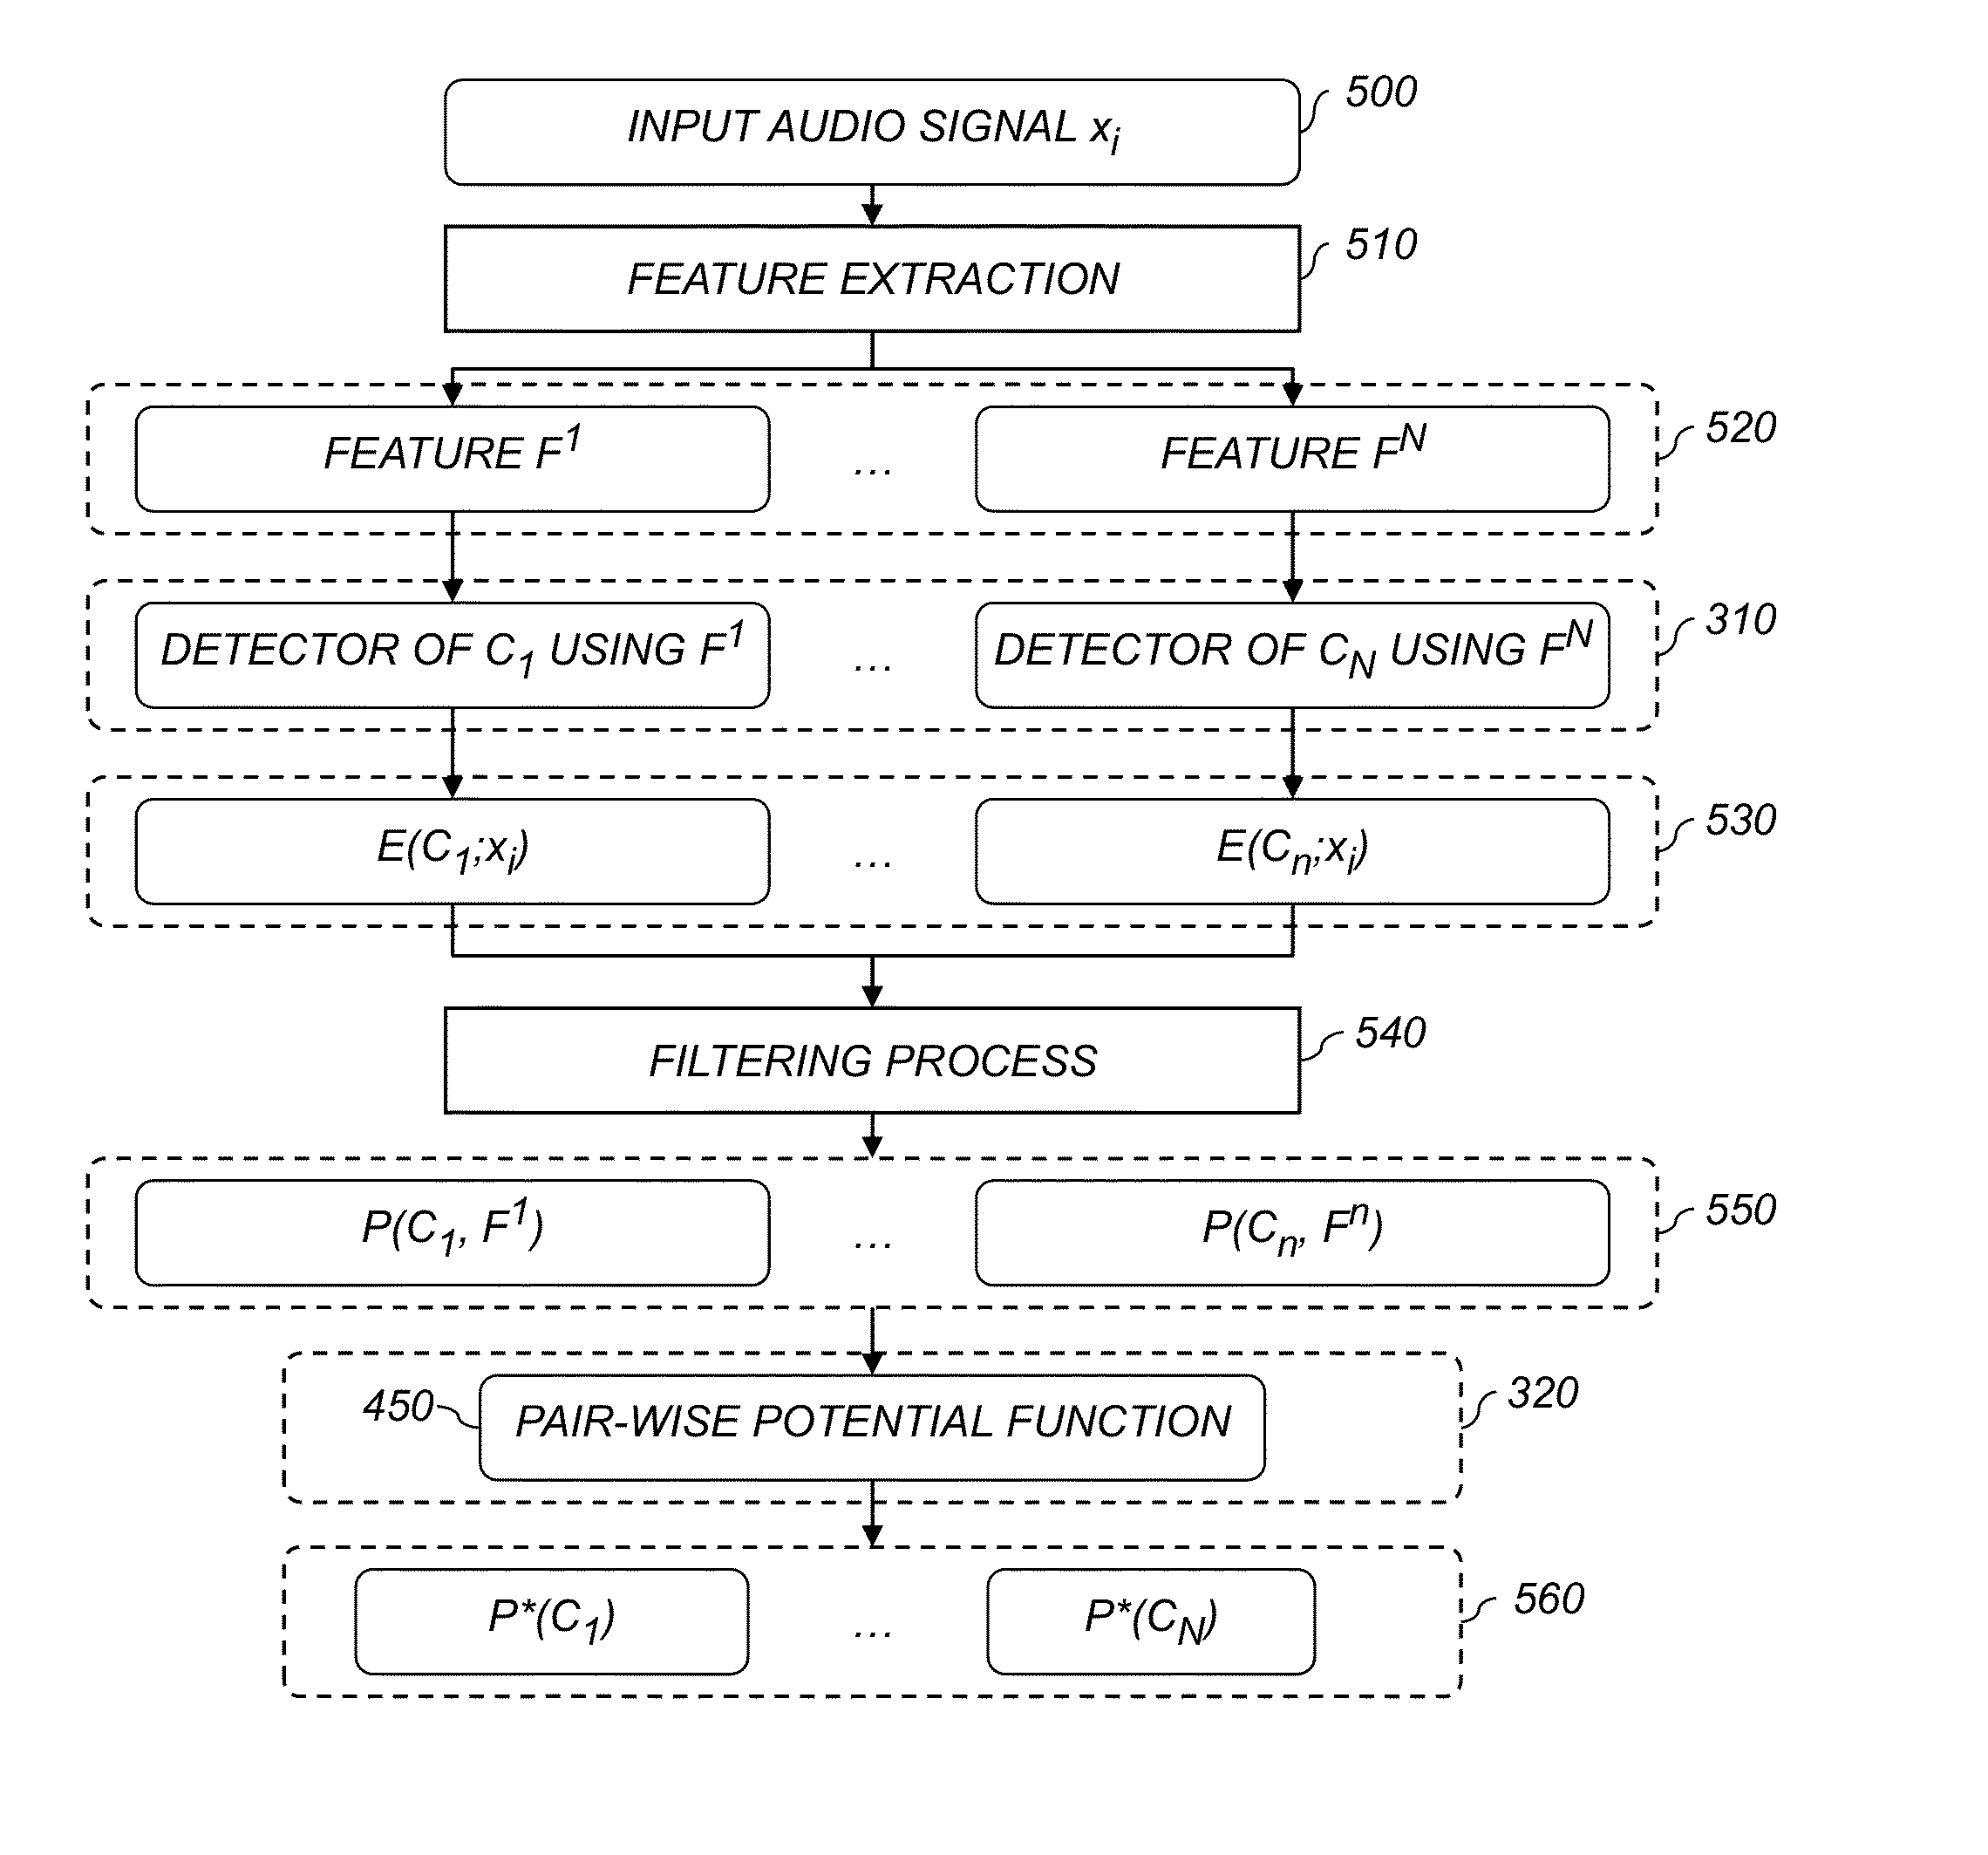 Audio signal semantic concept classification method